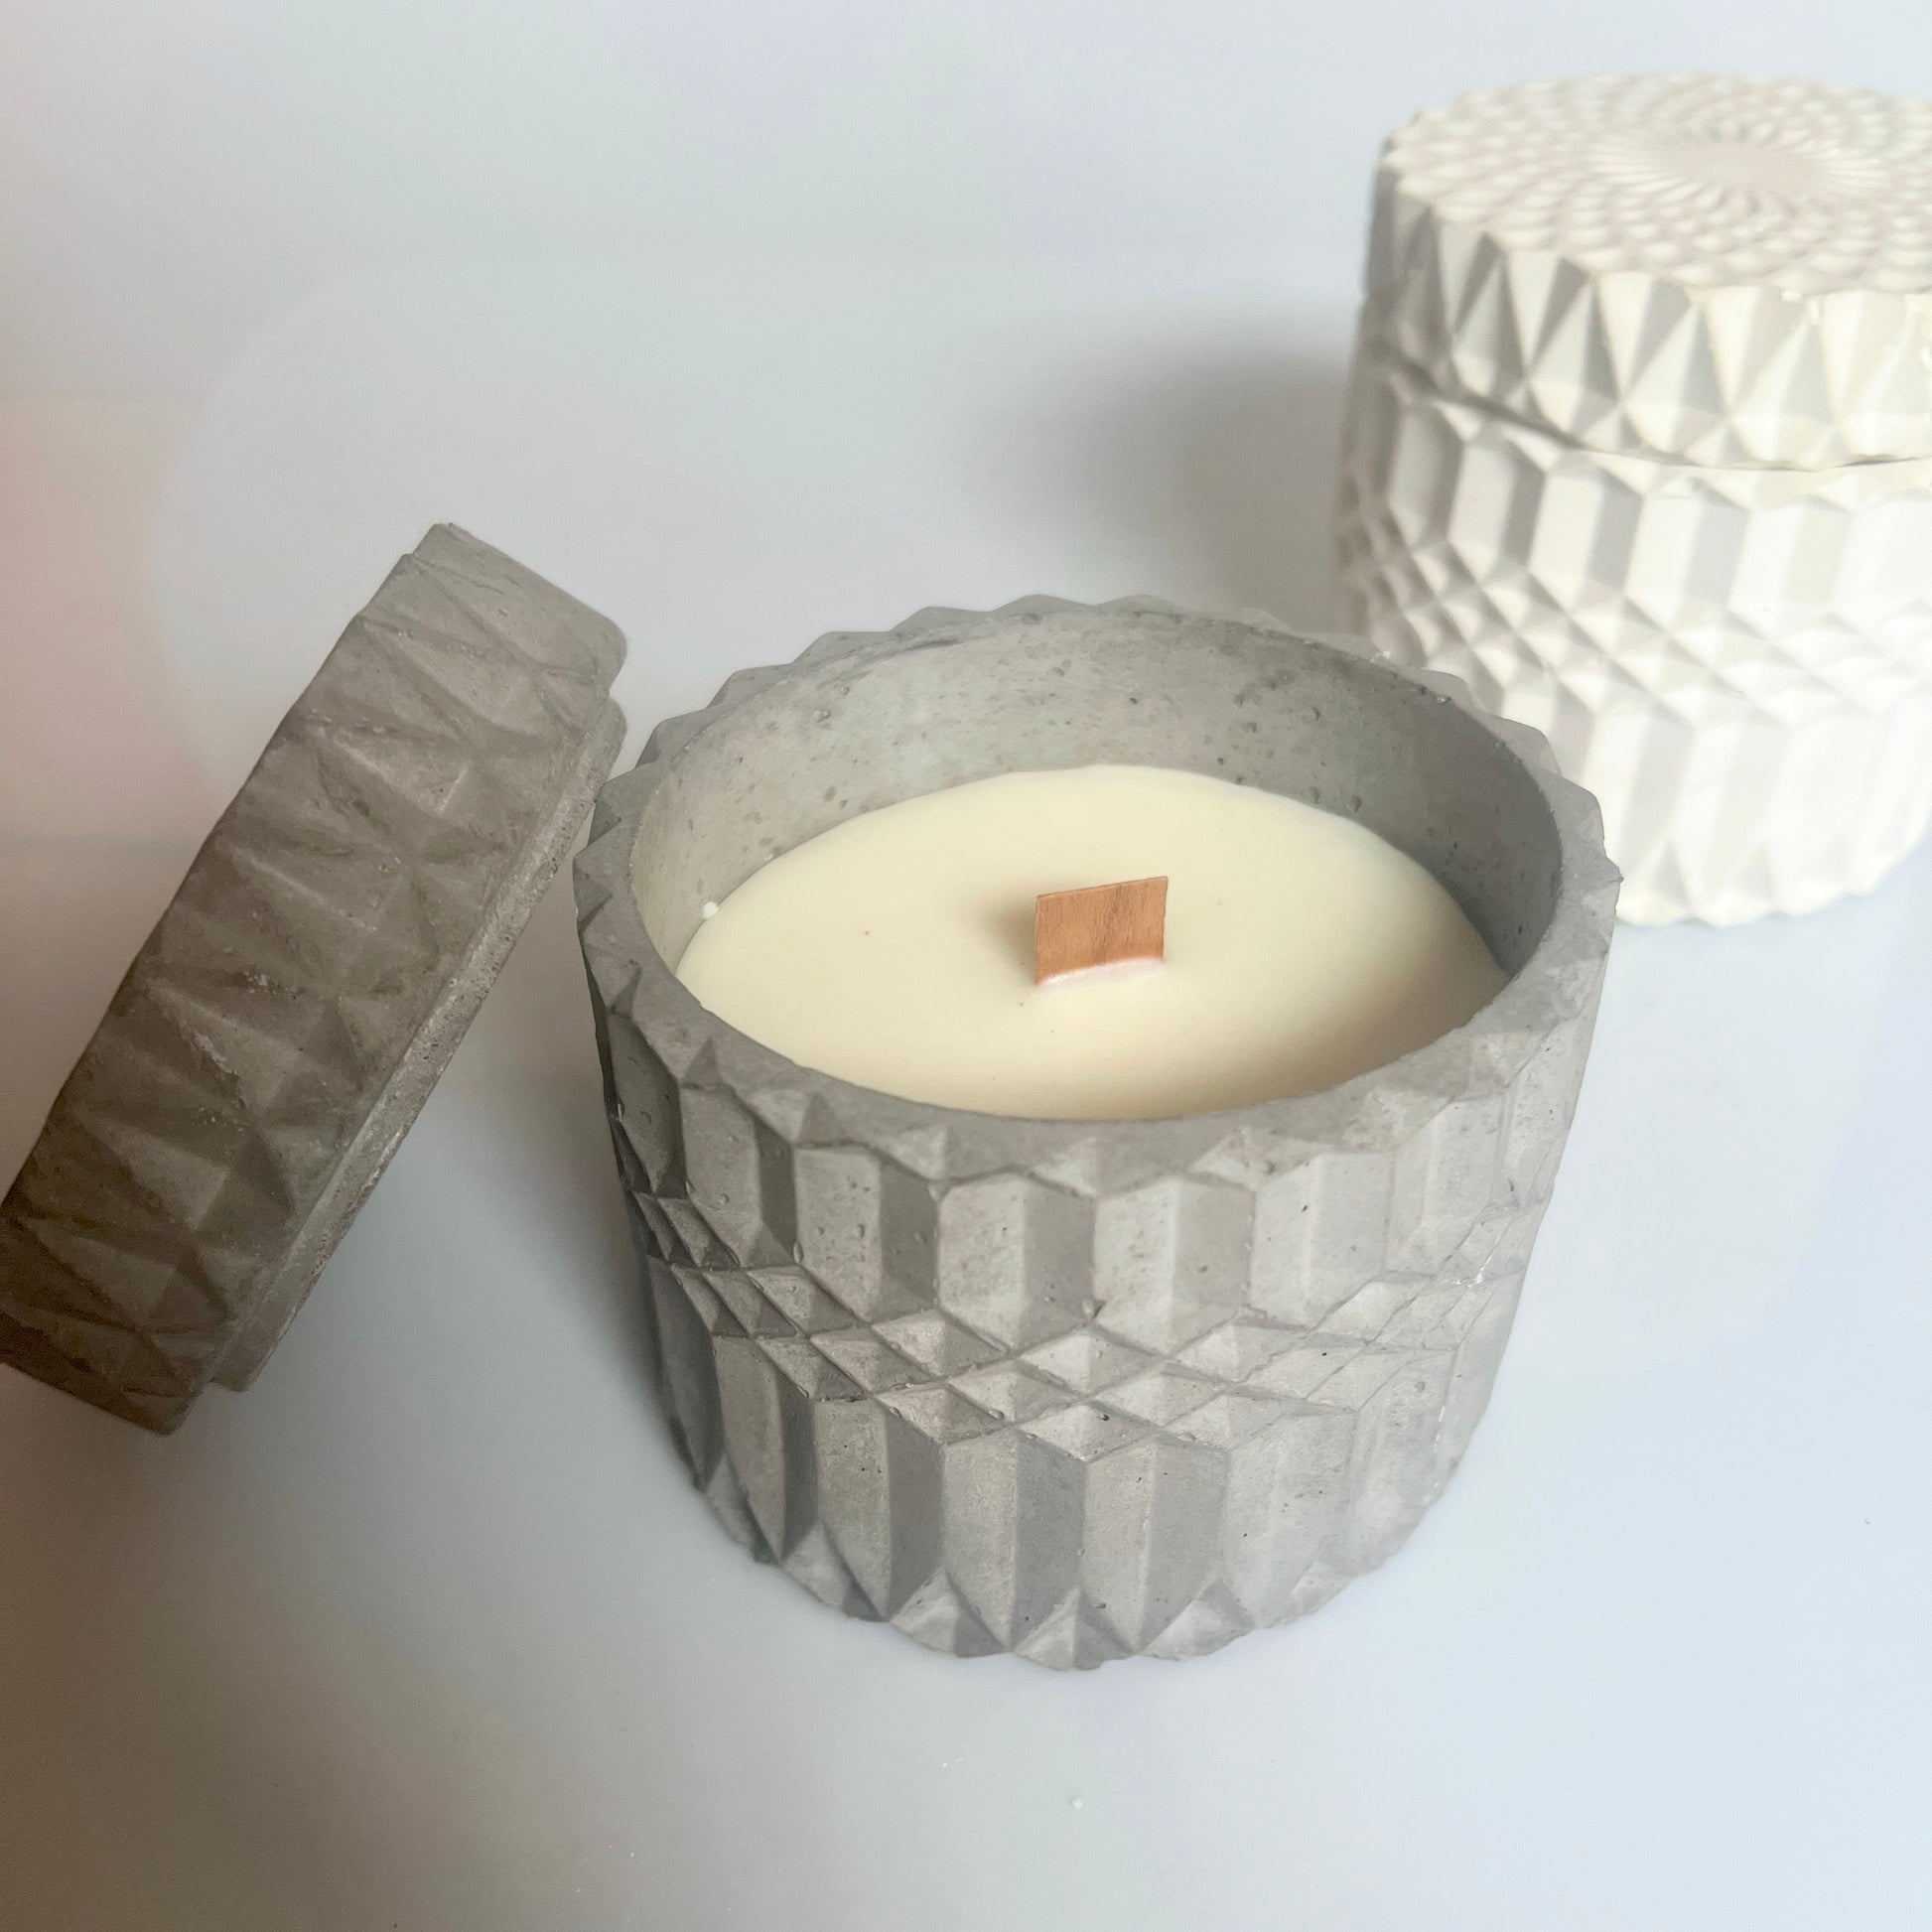 candele Pandora in cemento e cera di soia profumata con oli essenziali naturali colore grigio e bianco